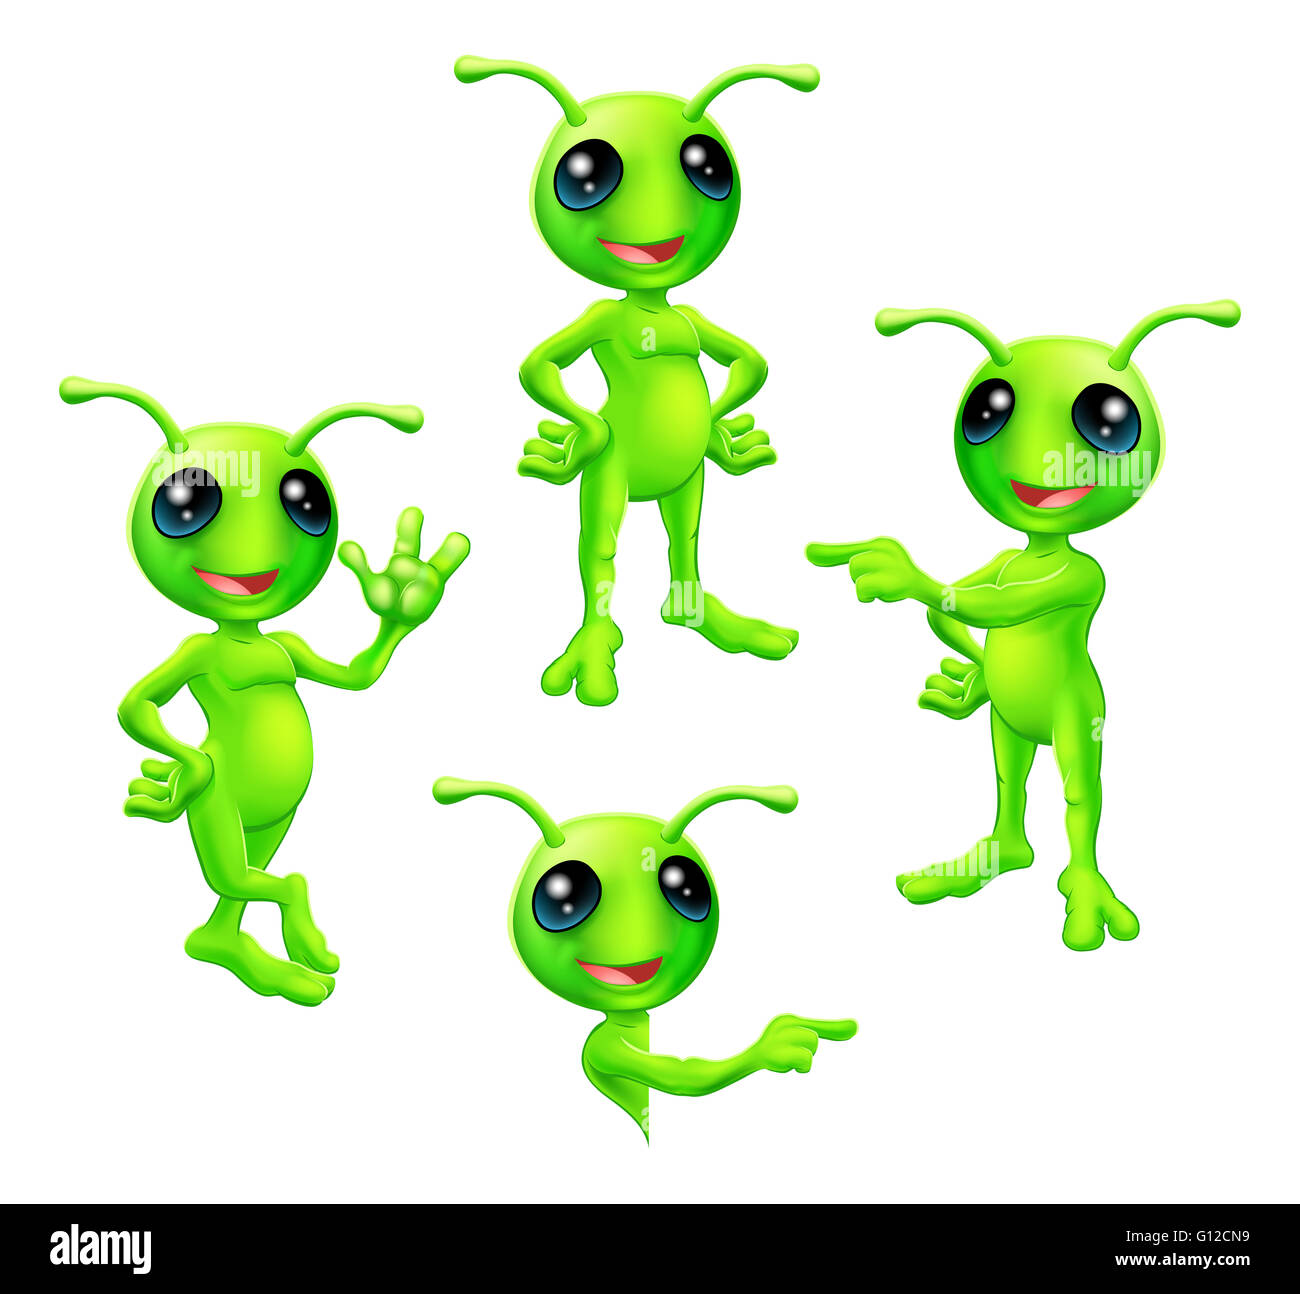 Un cute cartoon caractère martien alien vert avec antennes dans diverses poses Banque D'Images